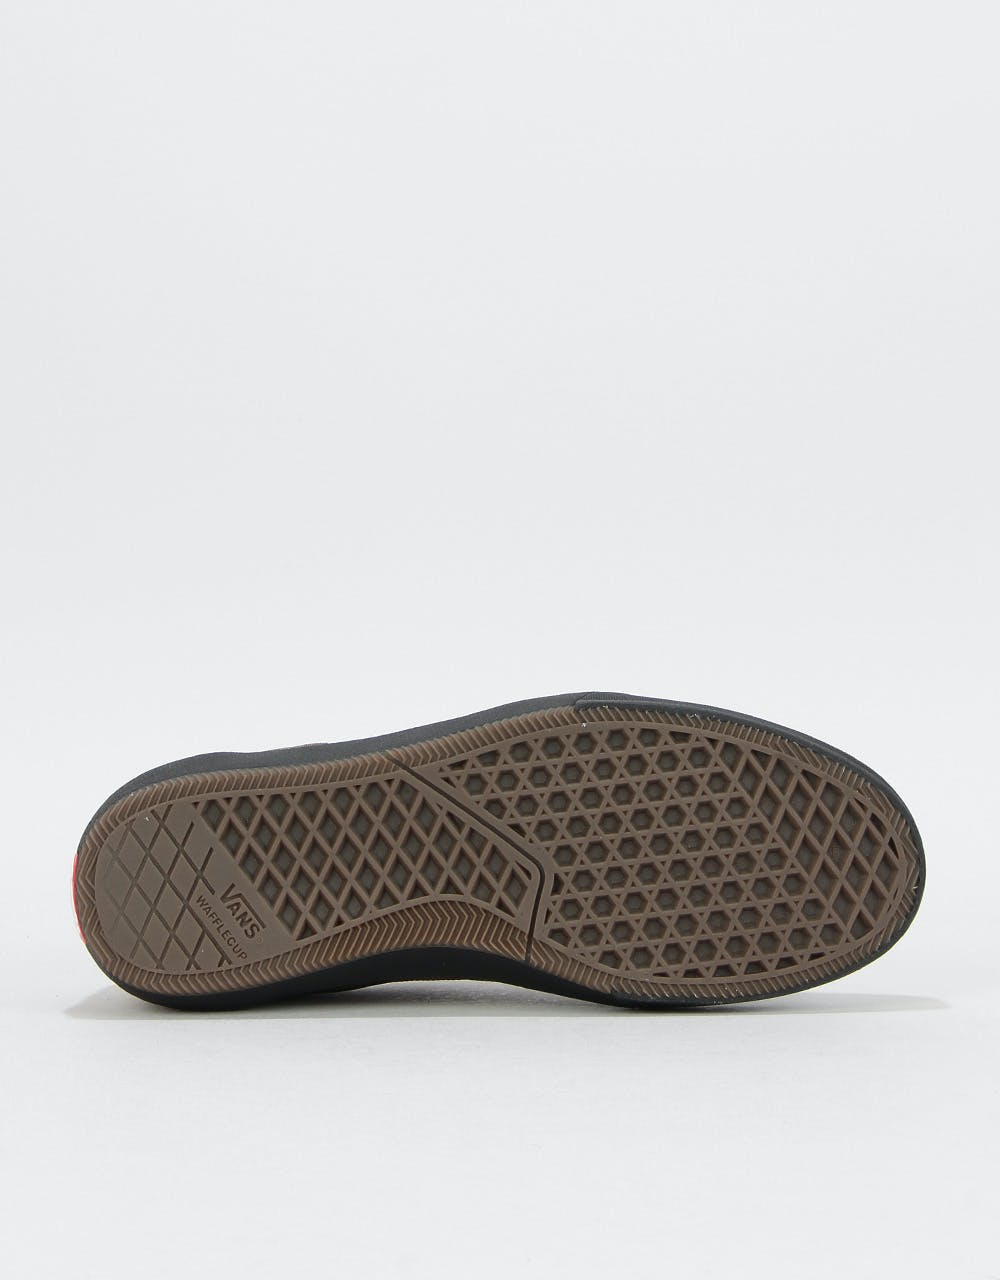 Vans Gilbert Crockett 2 Pro Skate Shoes - (Tactile) Beech/Black